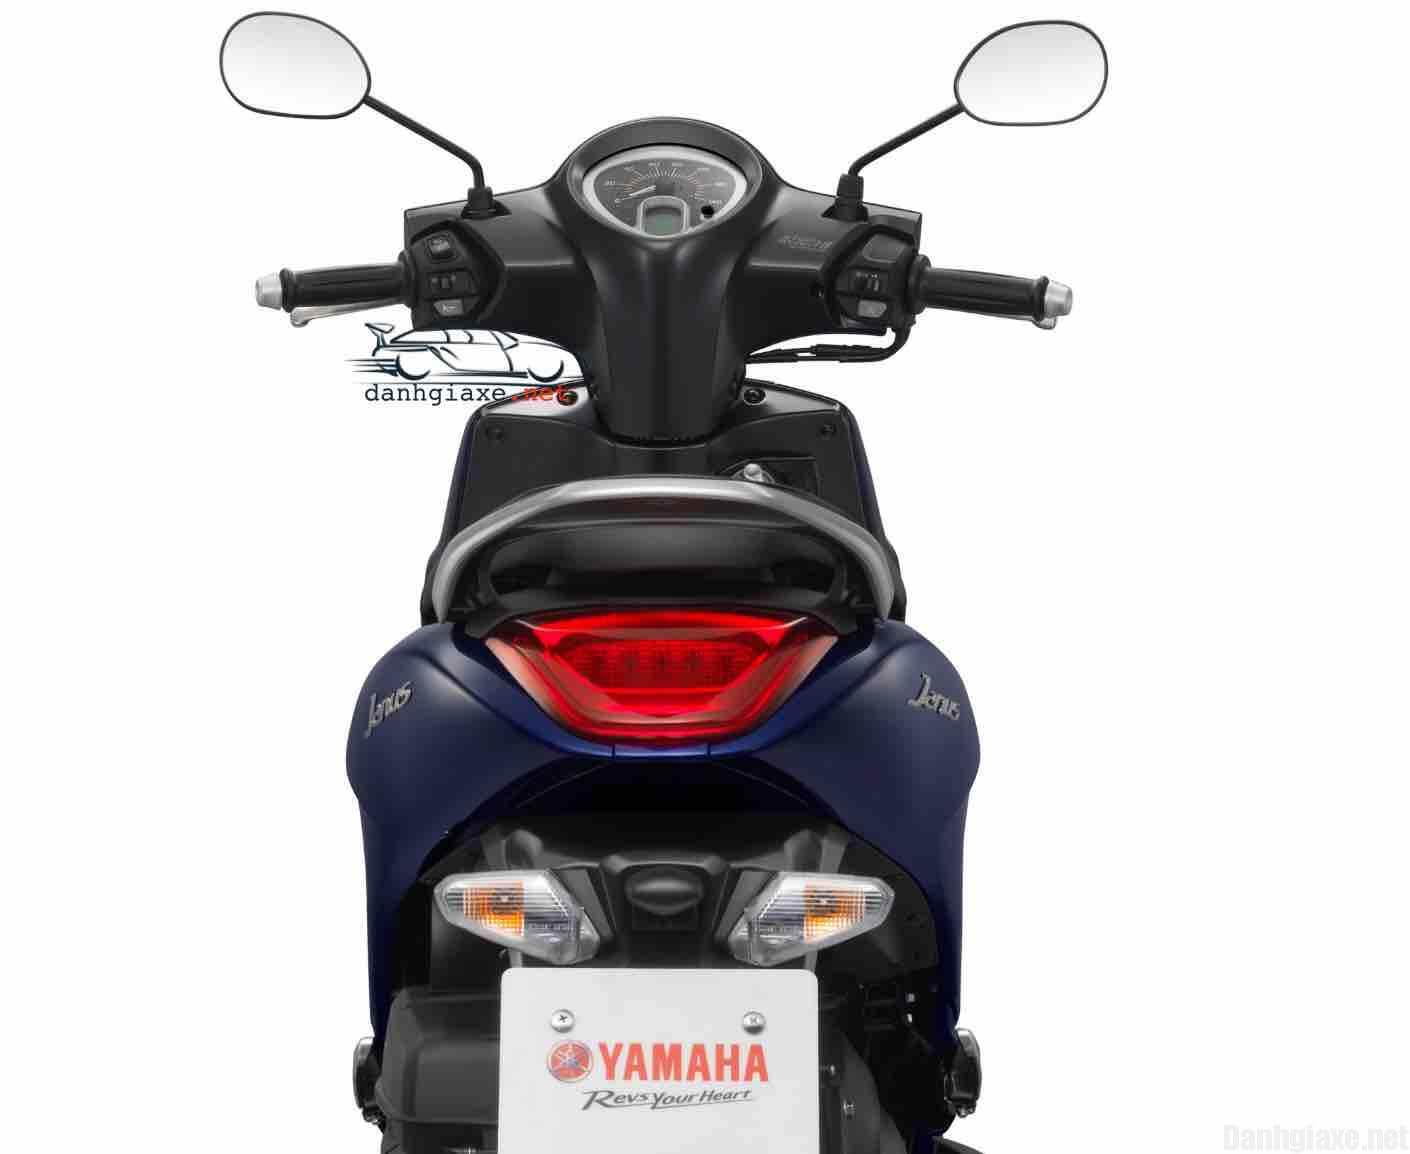 Hình ảnh xe Yamaha Janus 2016 chi tiết kèm thông số kỹ thuật - Danhgiaxe